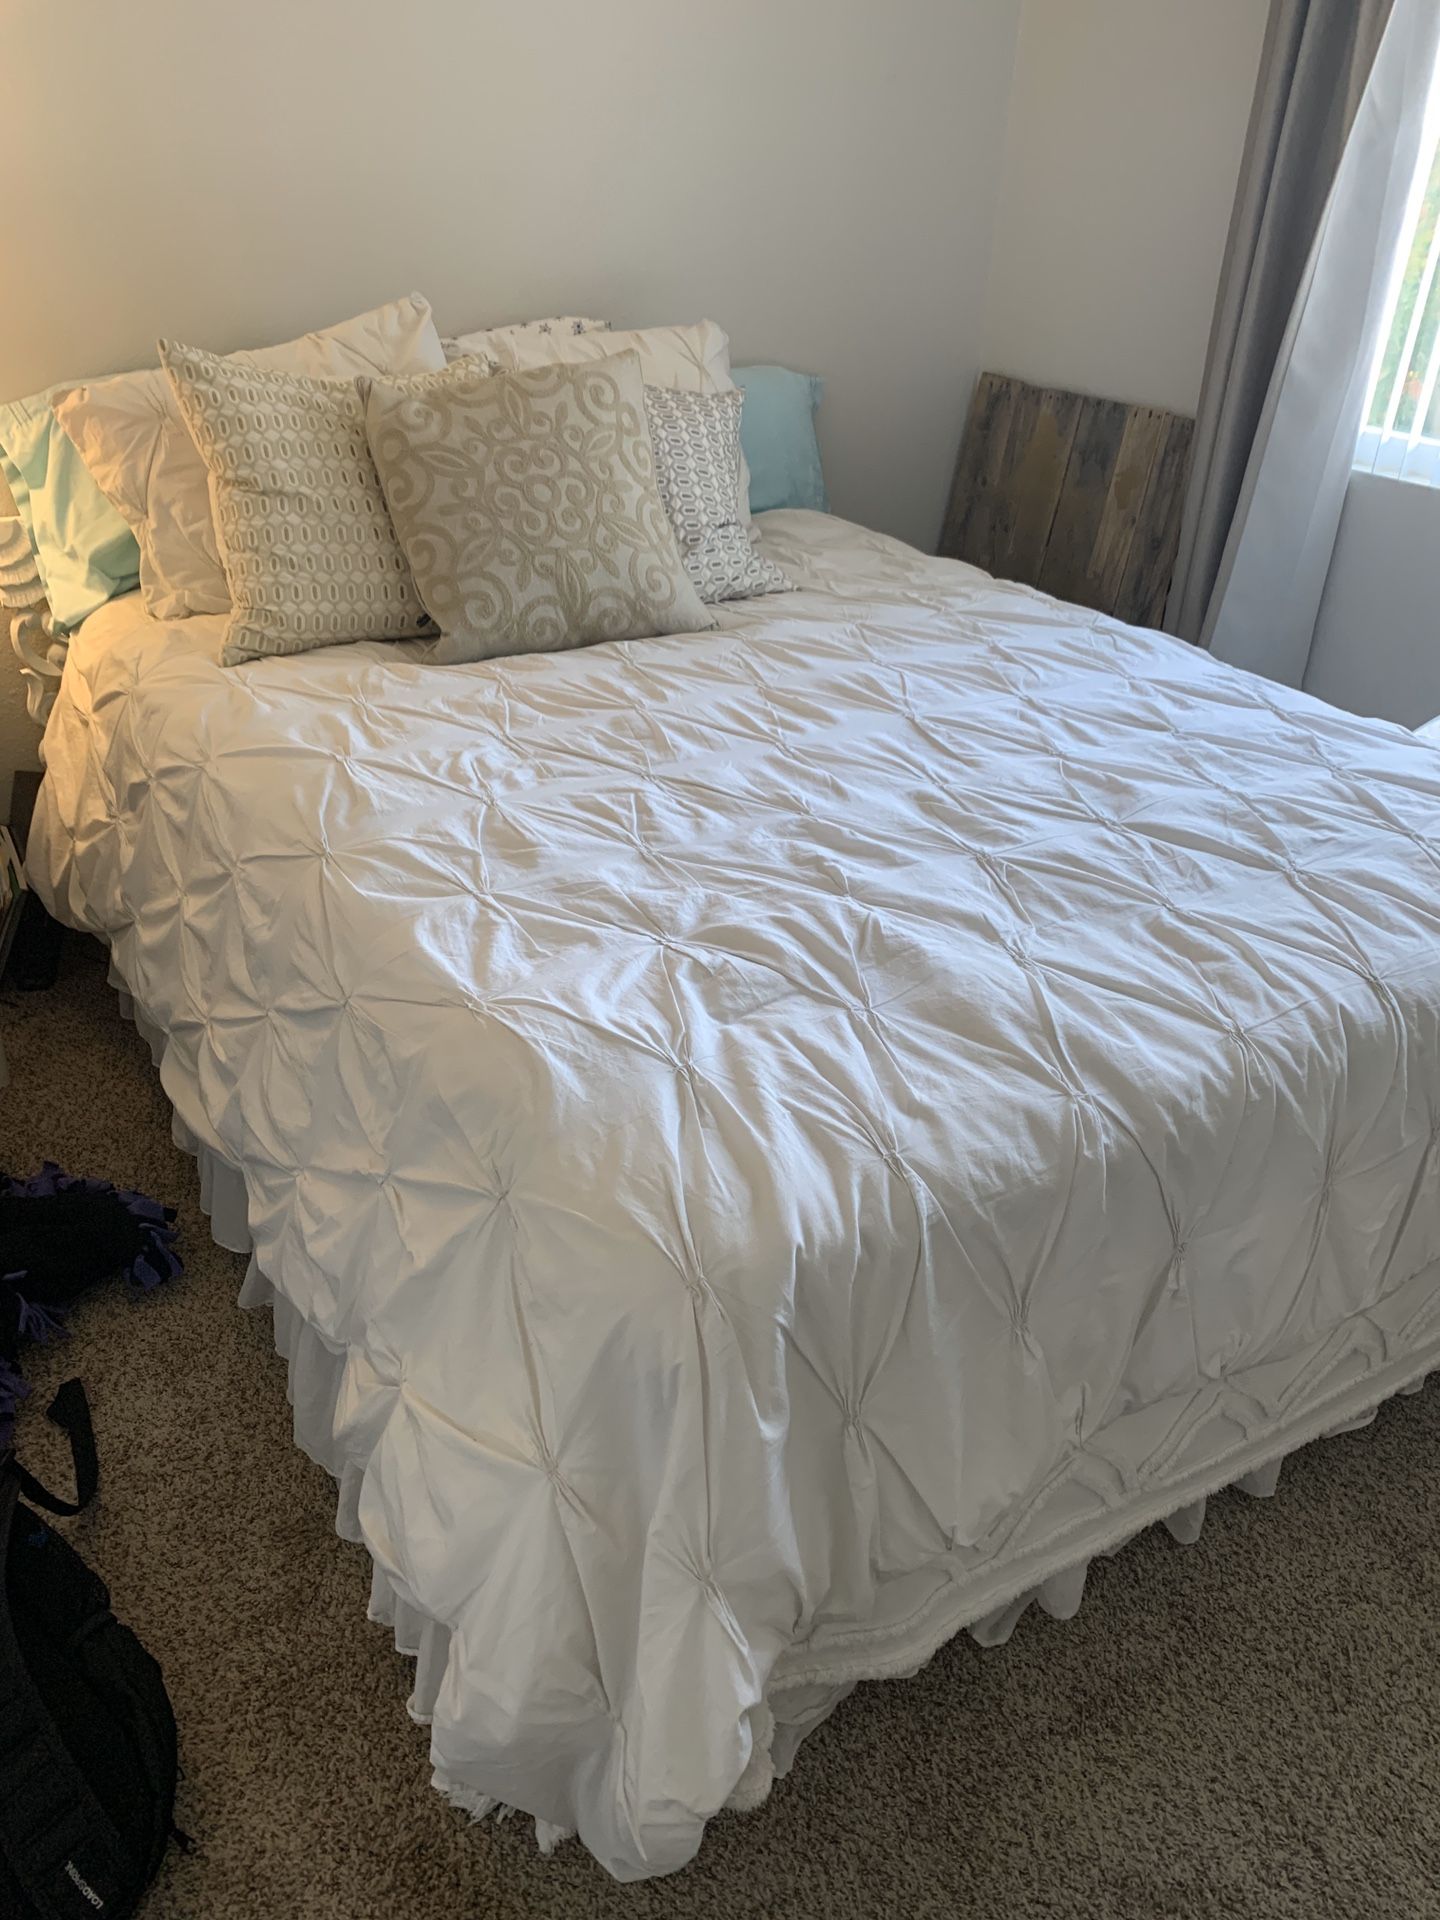 Queen bed-mattress